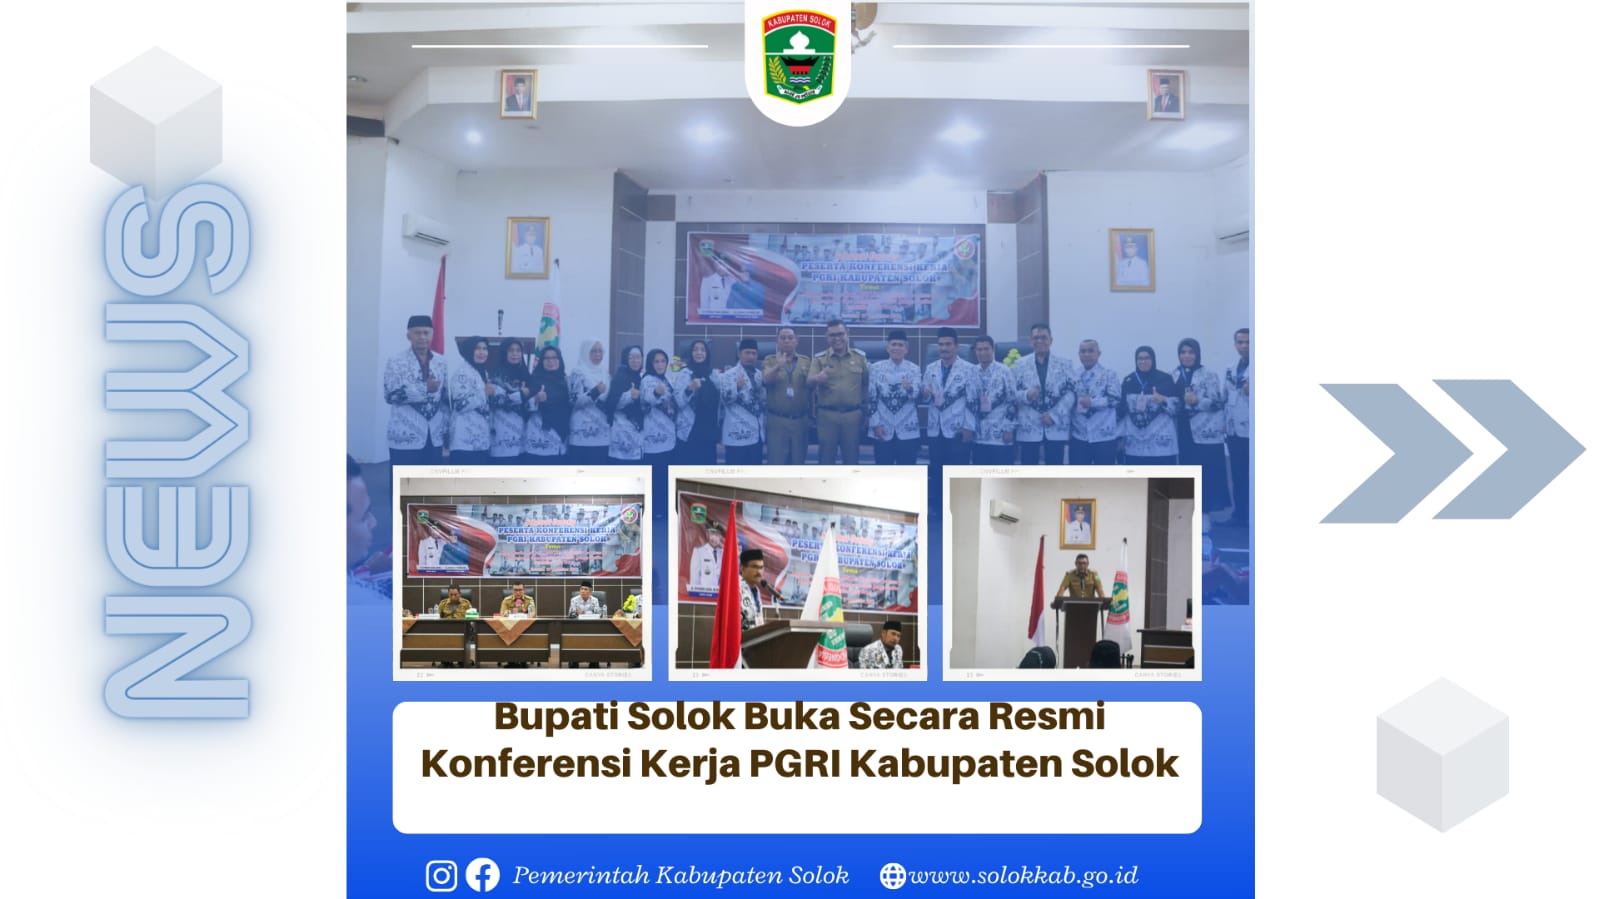 Bupati Solok Buka Secara Resmi Konferensi Kerja PGRI Kabupaten Solok 